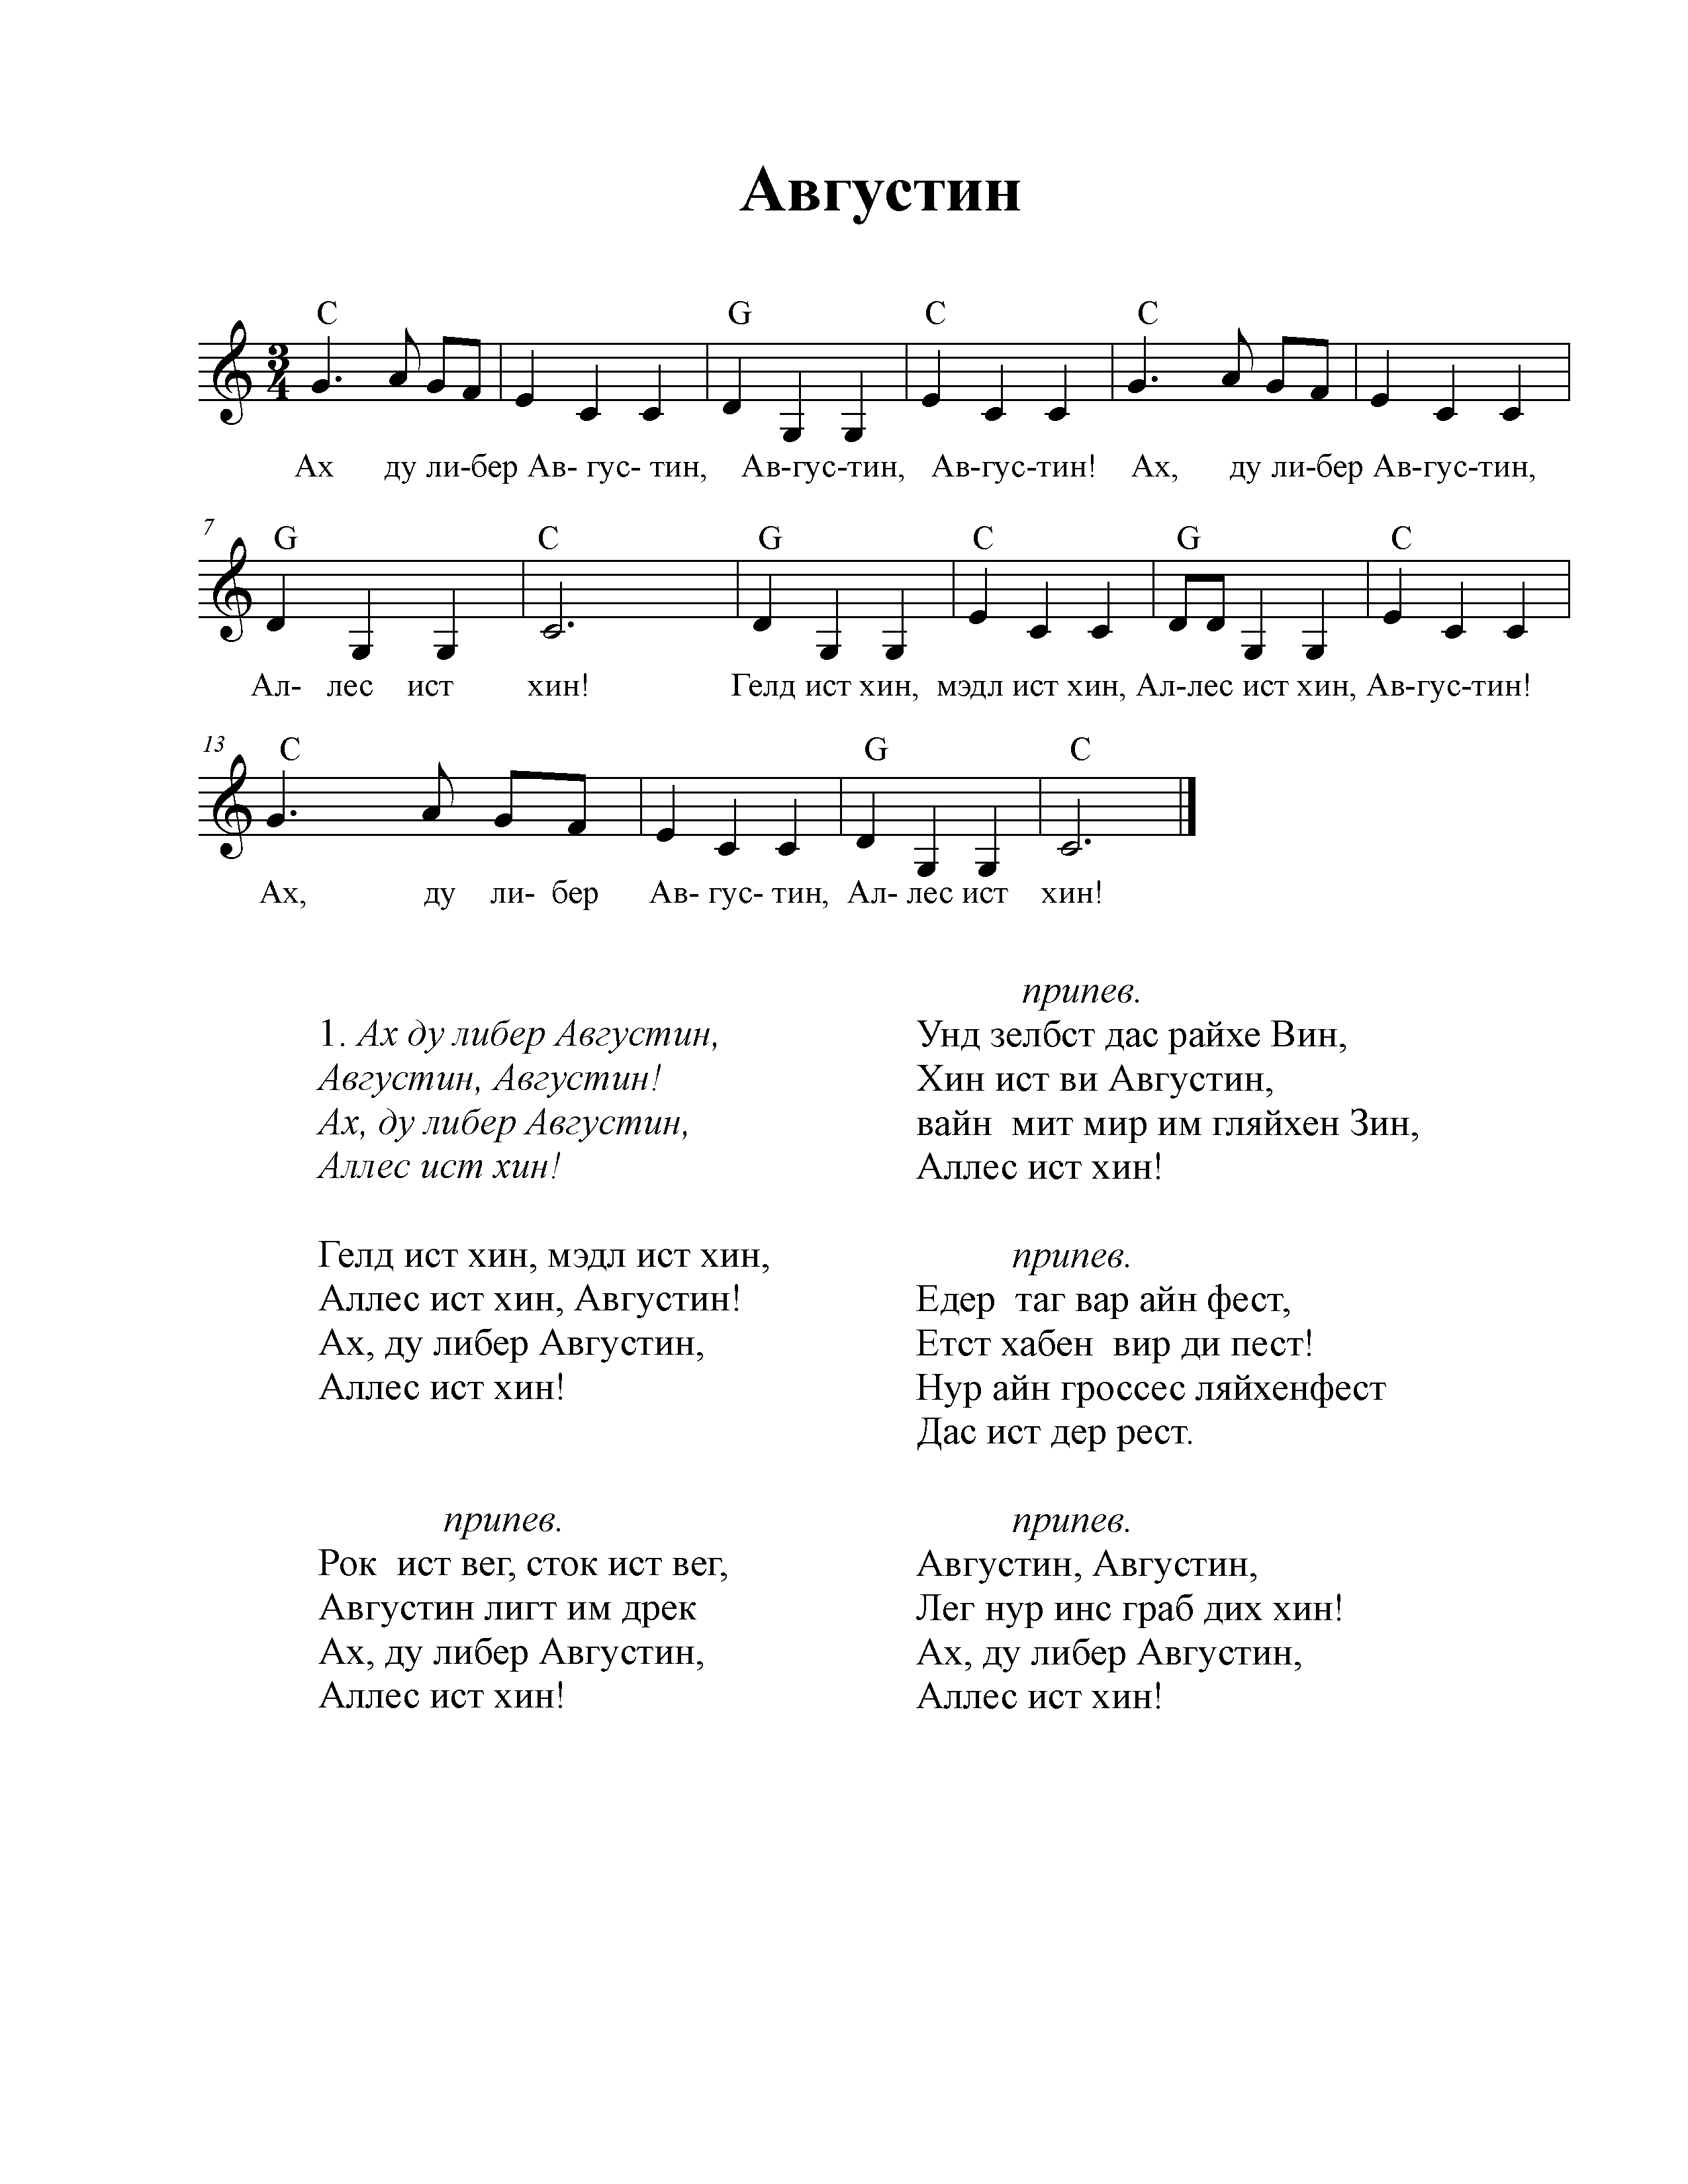 Транскрипция немецких песен